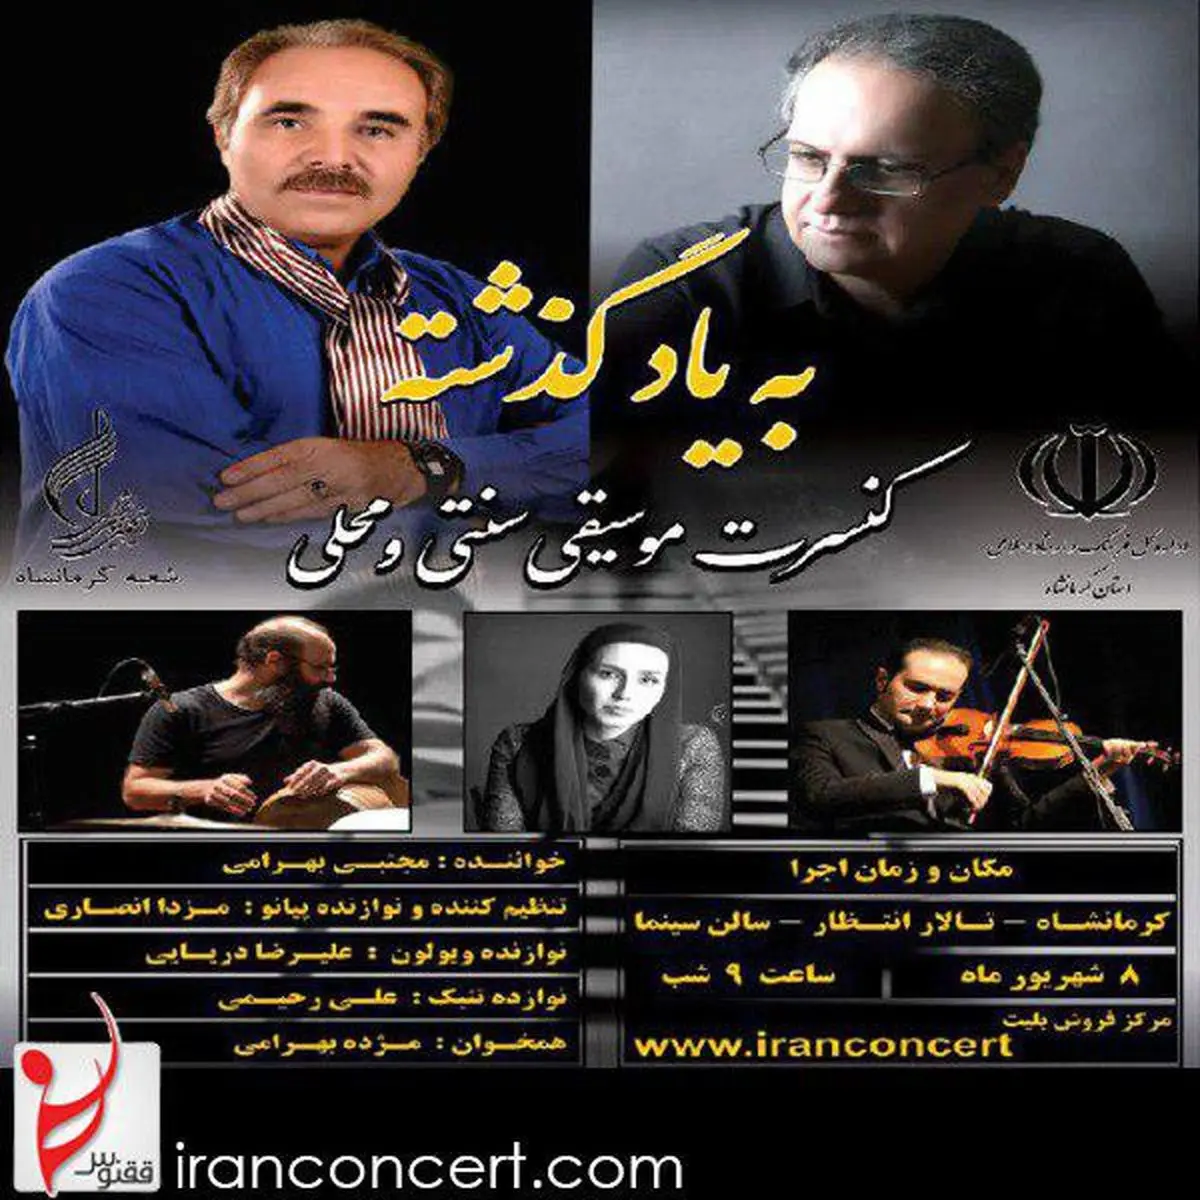 برگزاری کنسرت موسیقی سنتی و محلی به یاد گذشته «مجتبی بهرامی» در تالار انتظار کرمانشاه